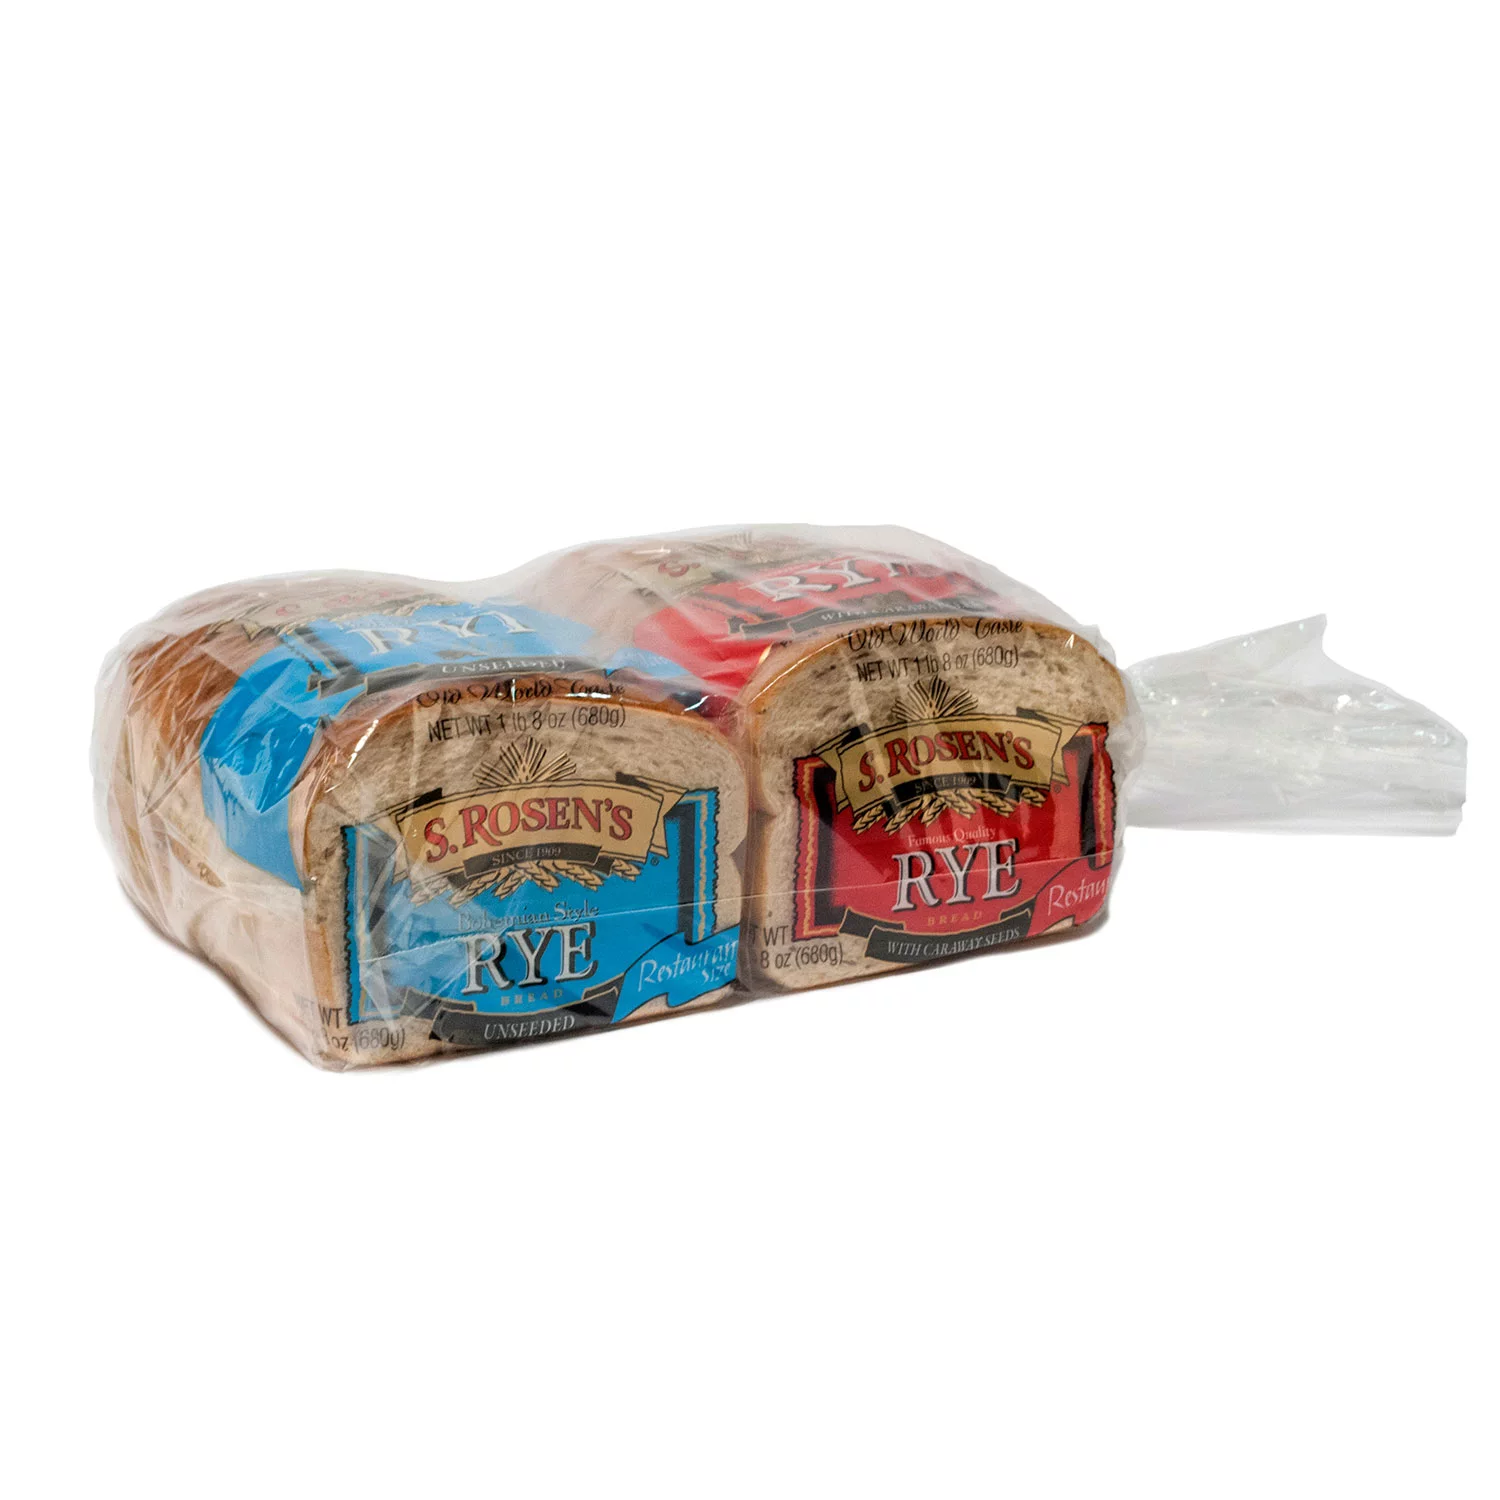 S. Rosen's Rye Seeded Bread Double Pack